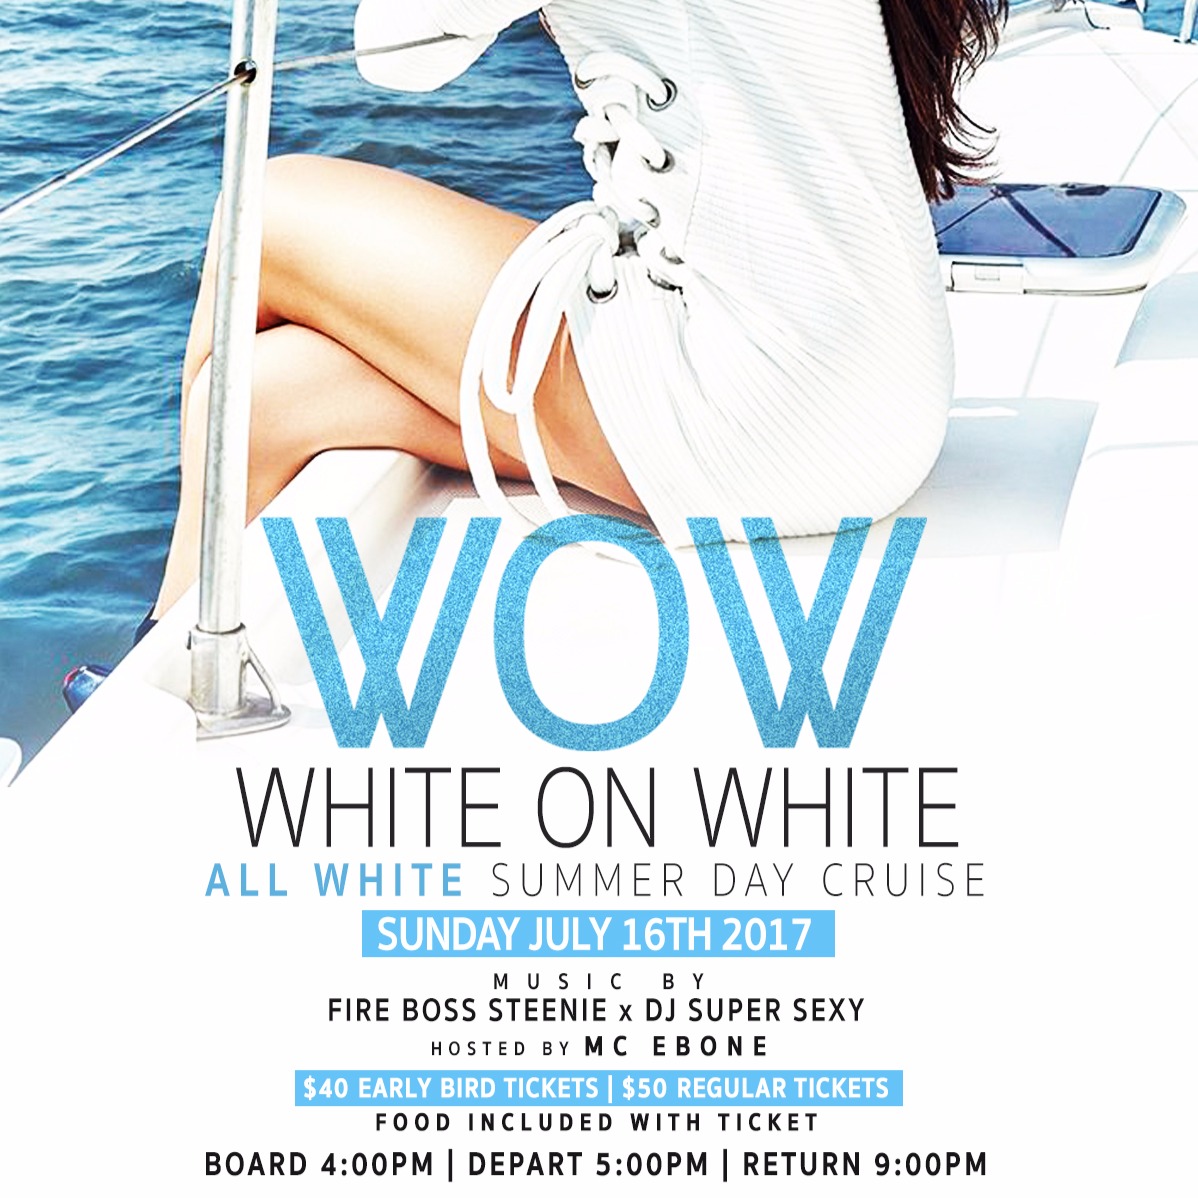 W.o.w. White On White Summer Day Cruise 